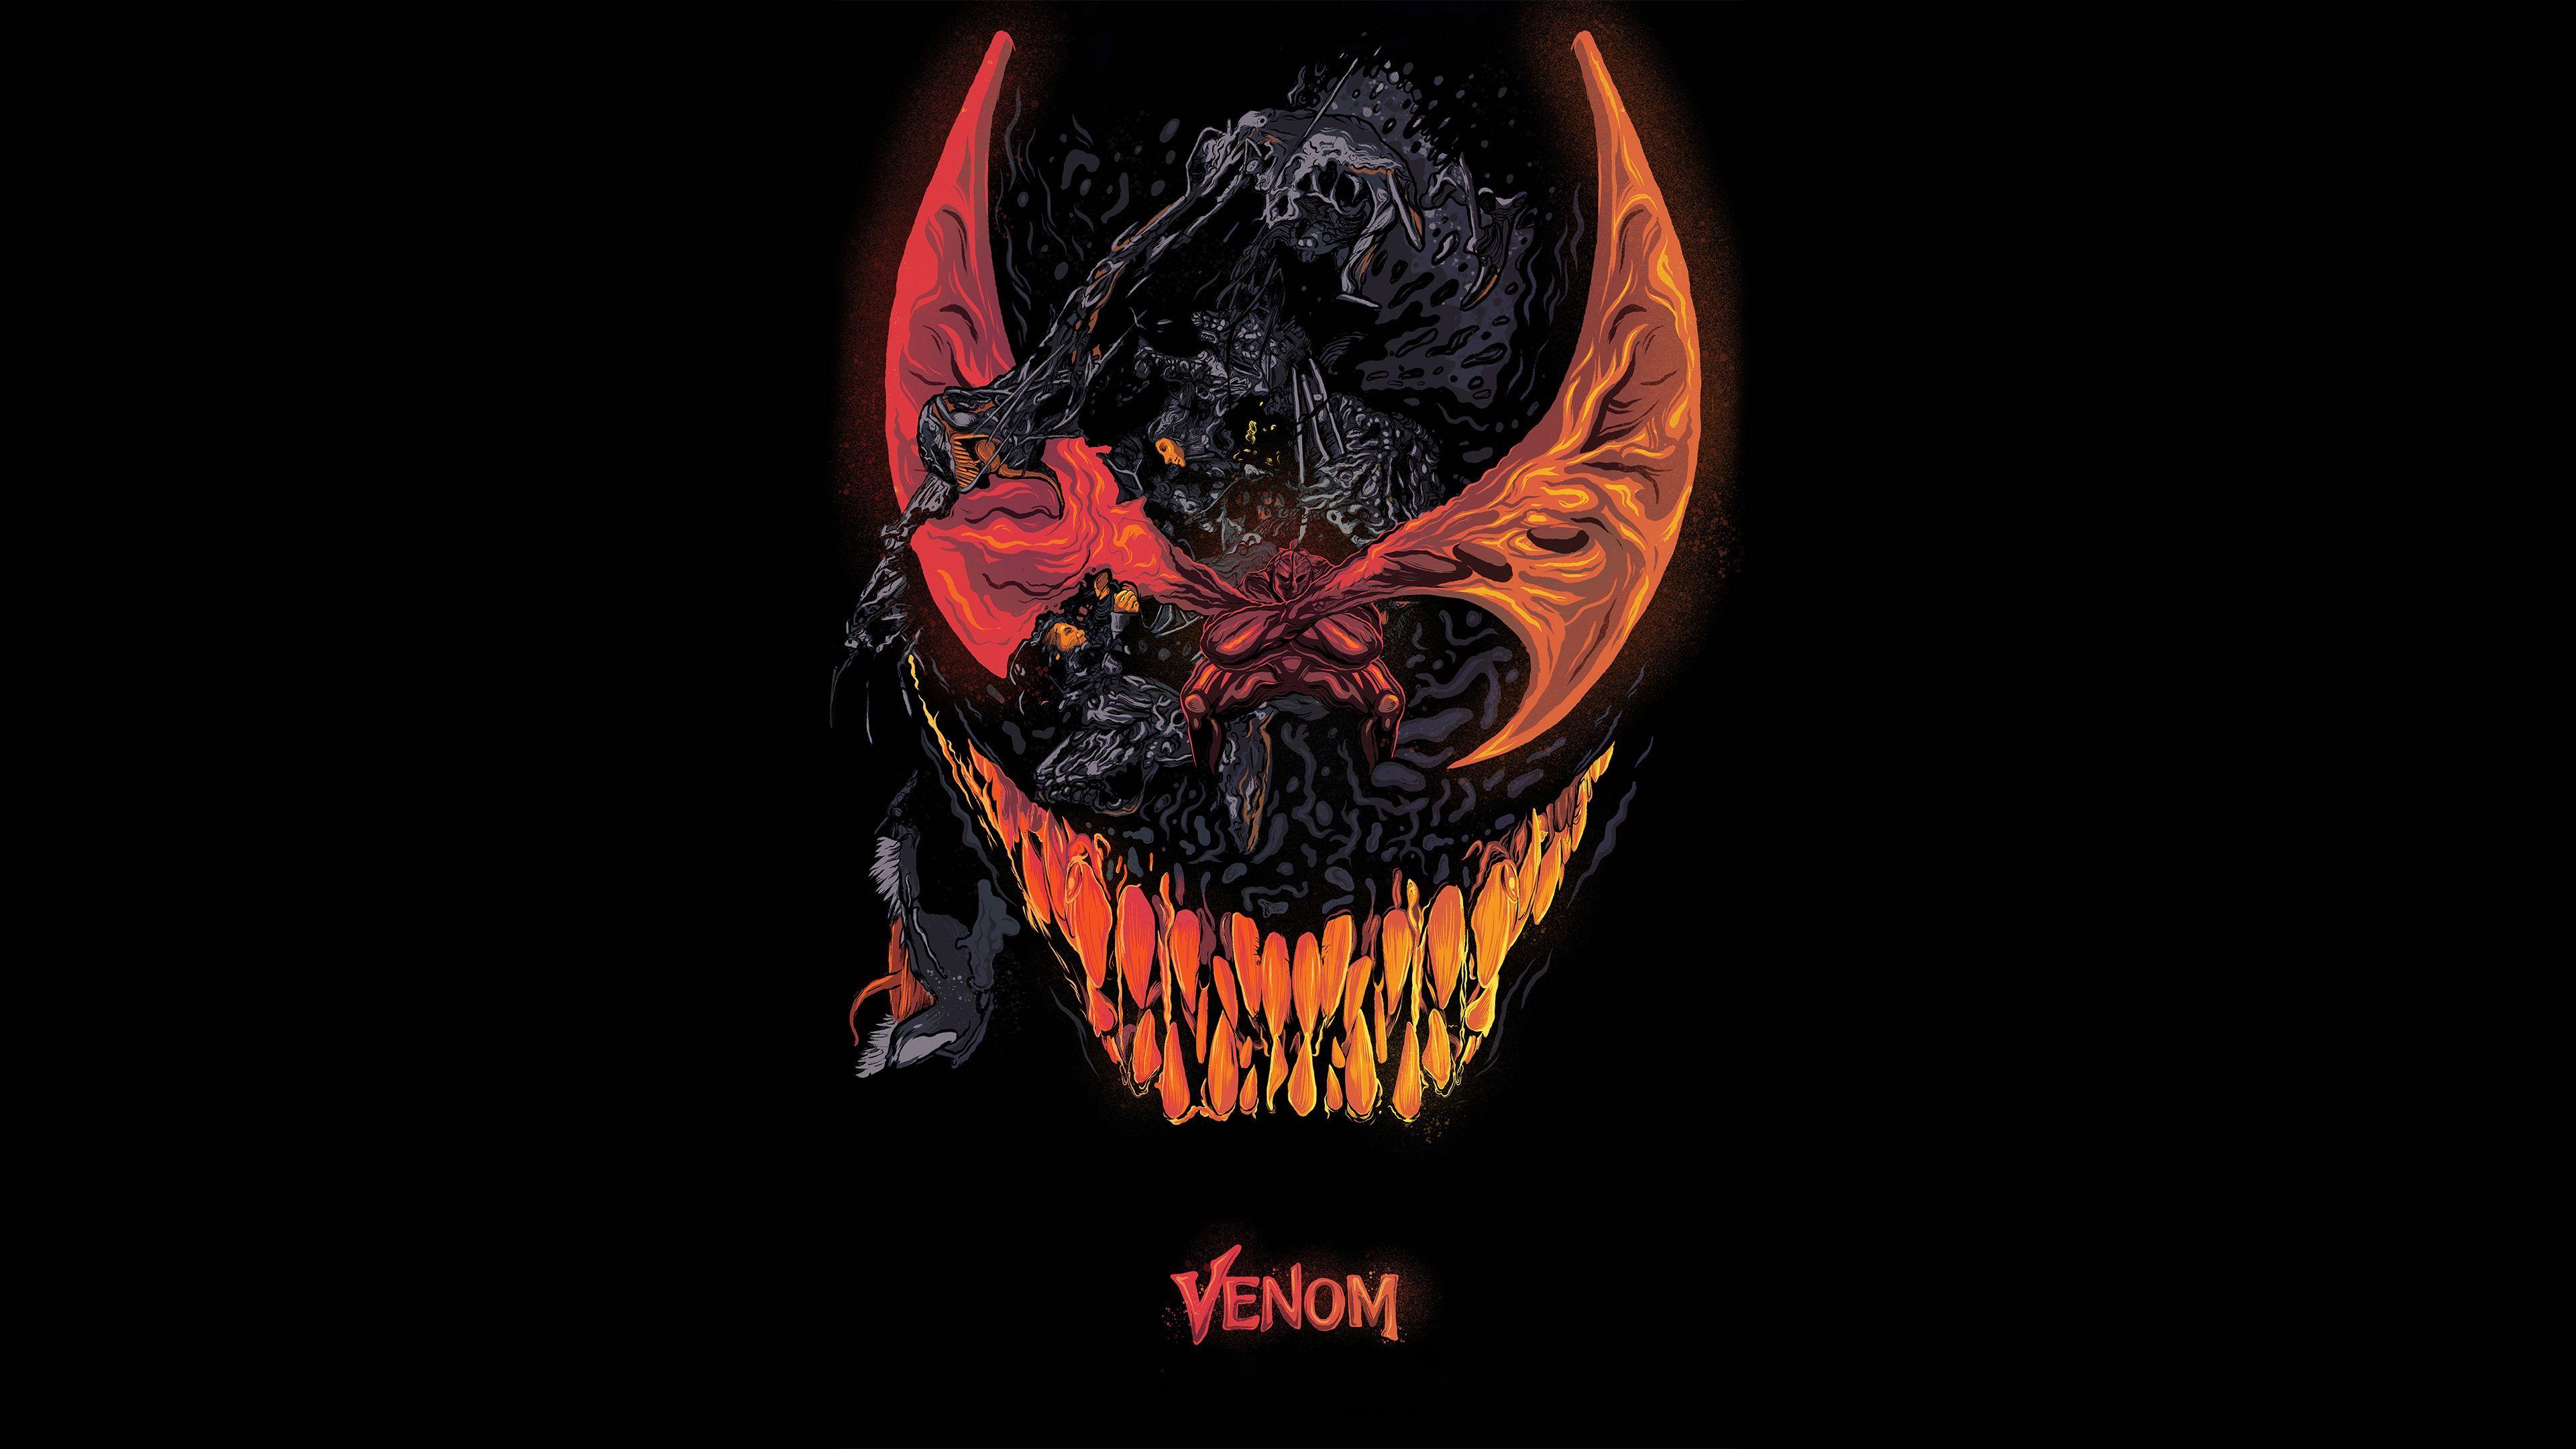 Venom Movie Artworks 4k Venom wallpaper, venom movie